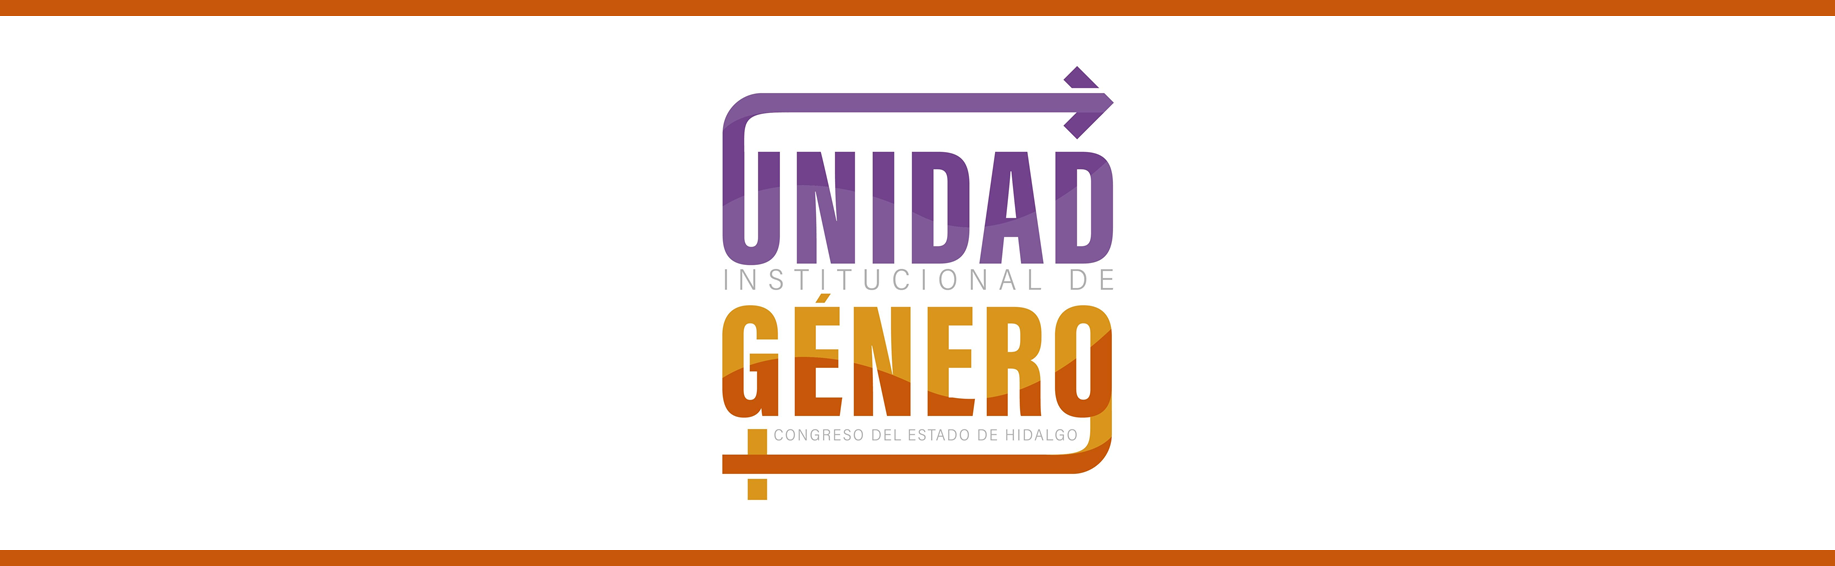 Logotipo de la Unidad Institucional de Género